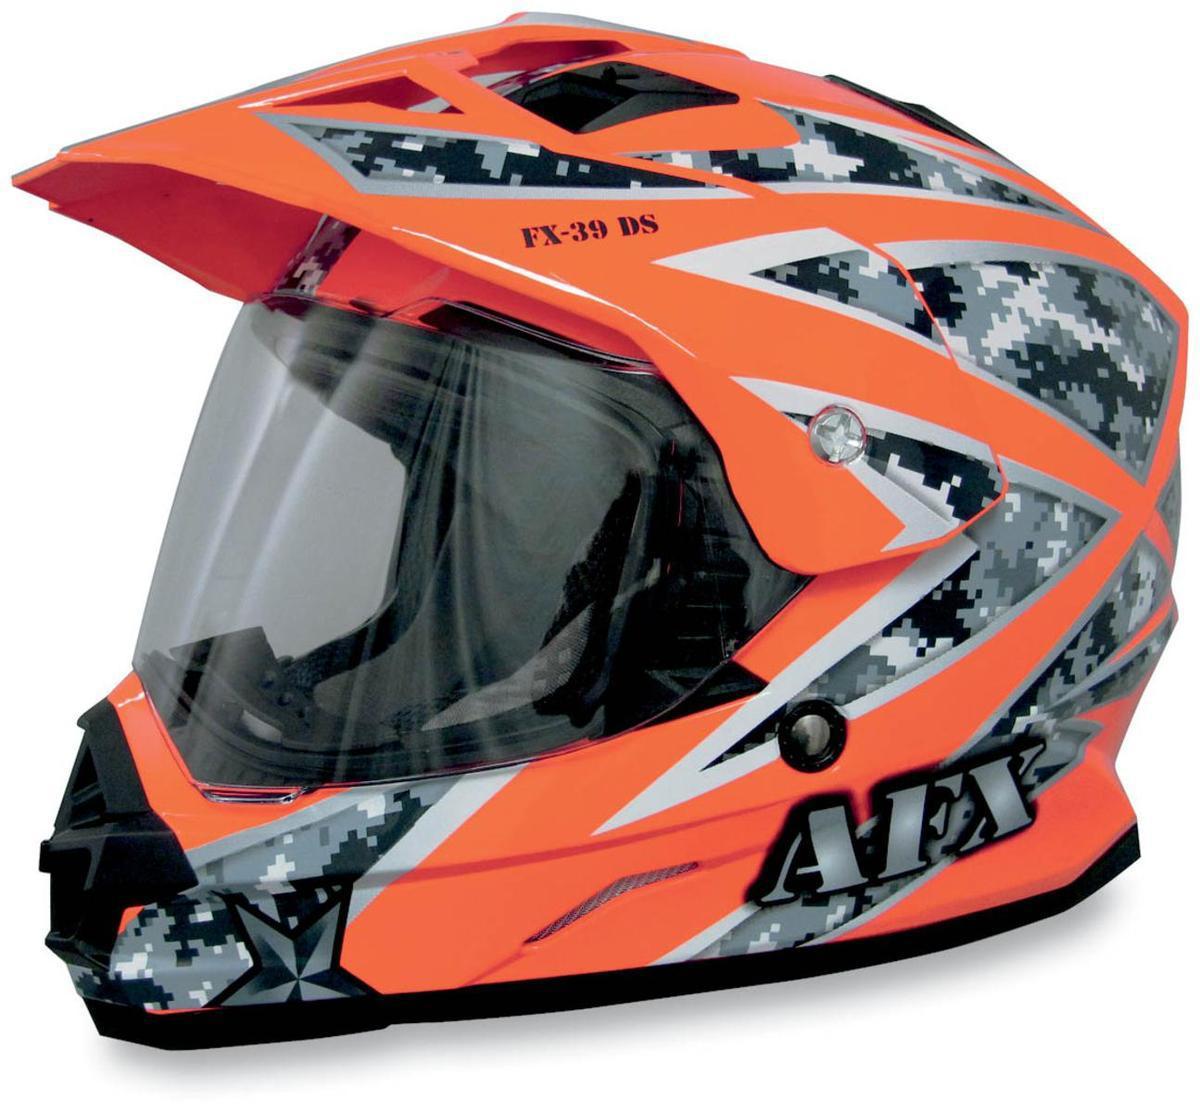 Afx fx-39 dual sport helmet urban orange